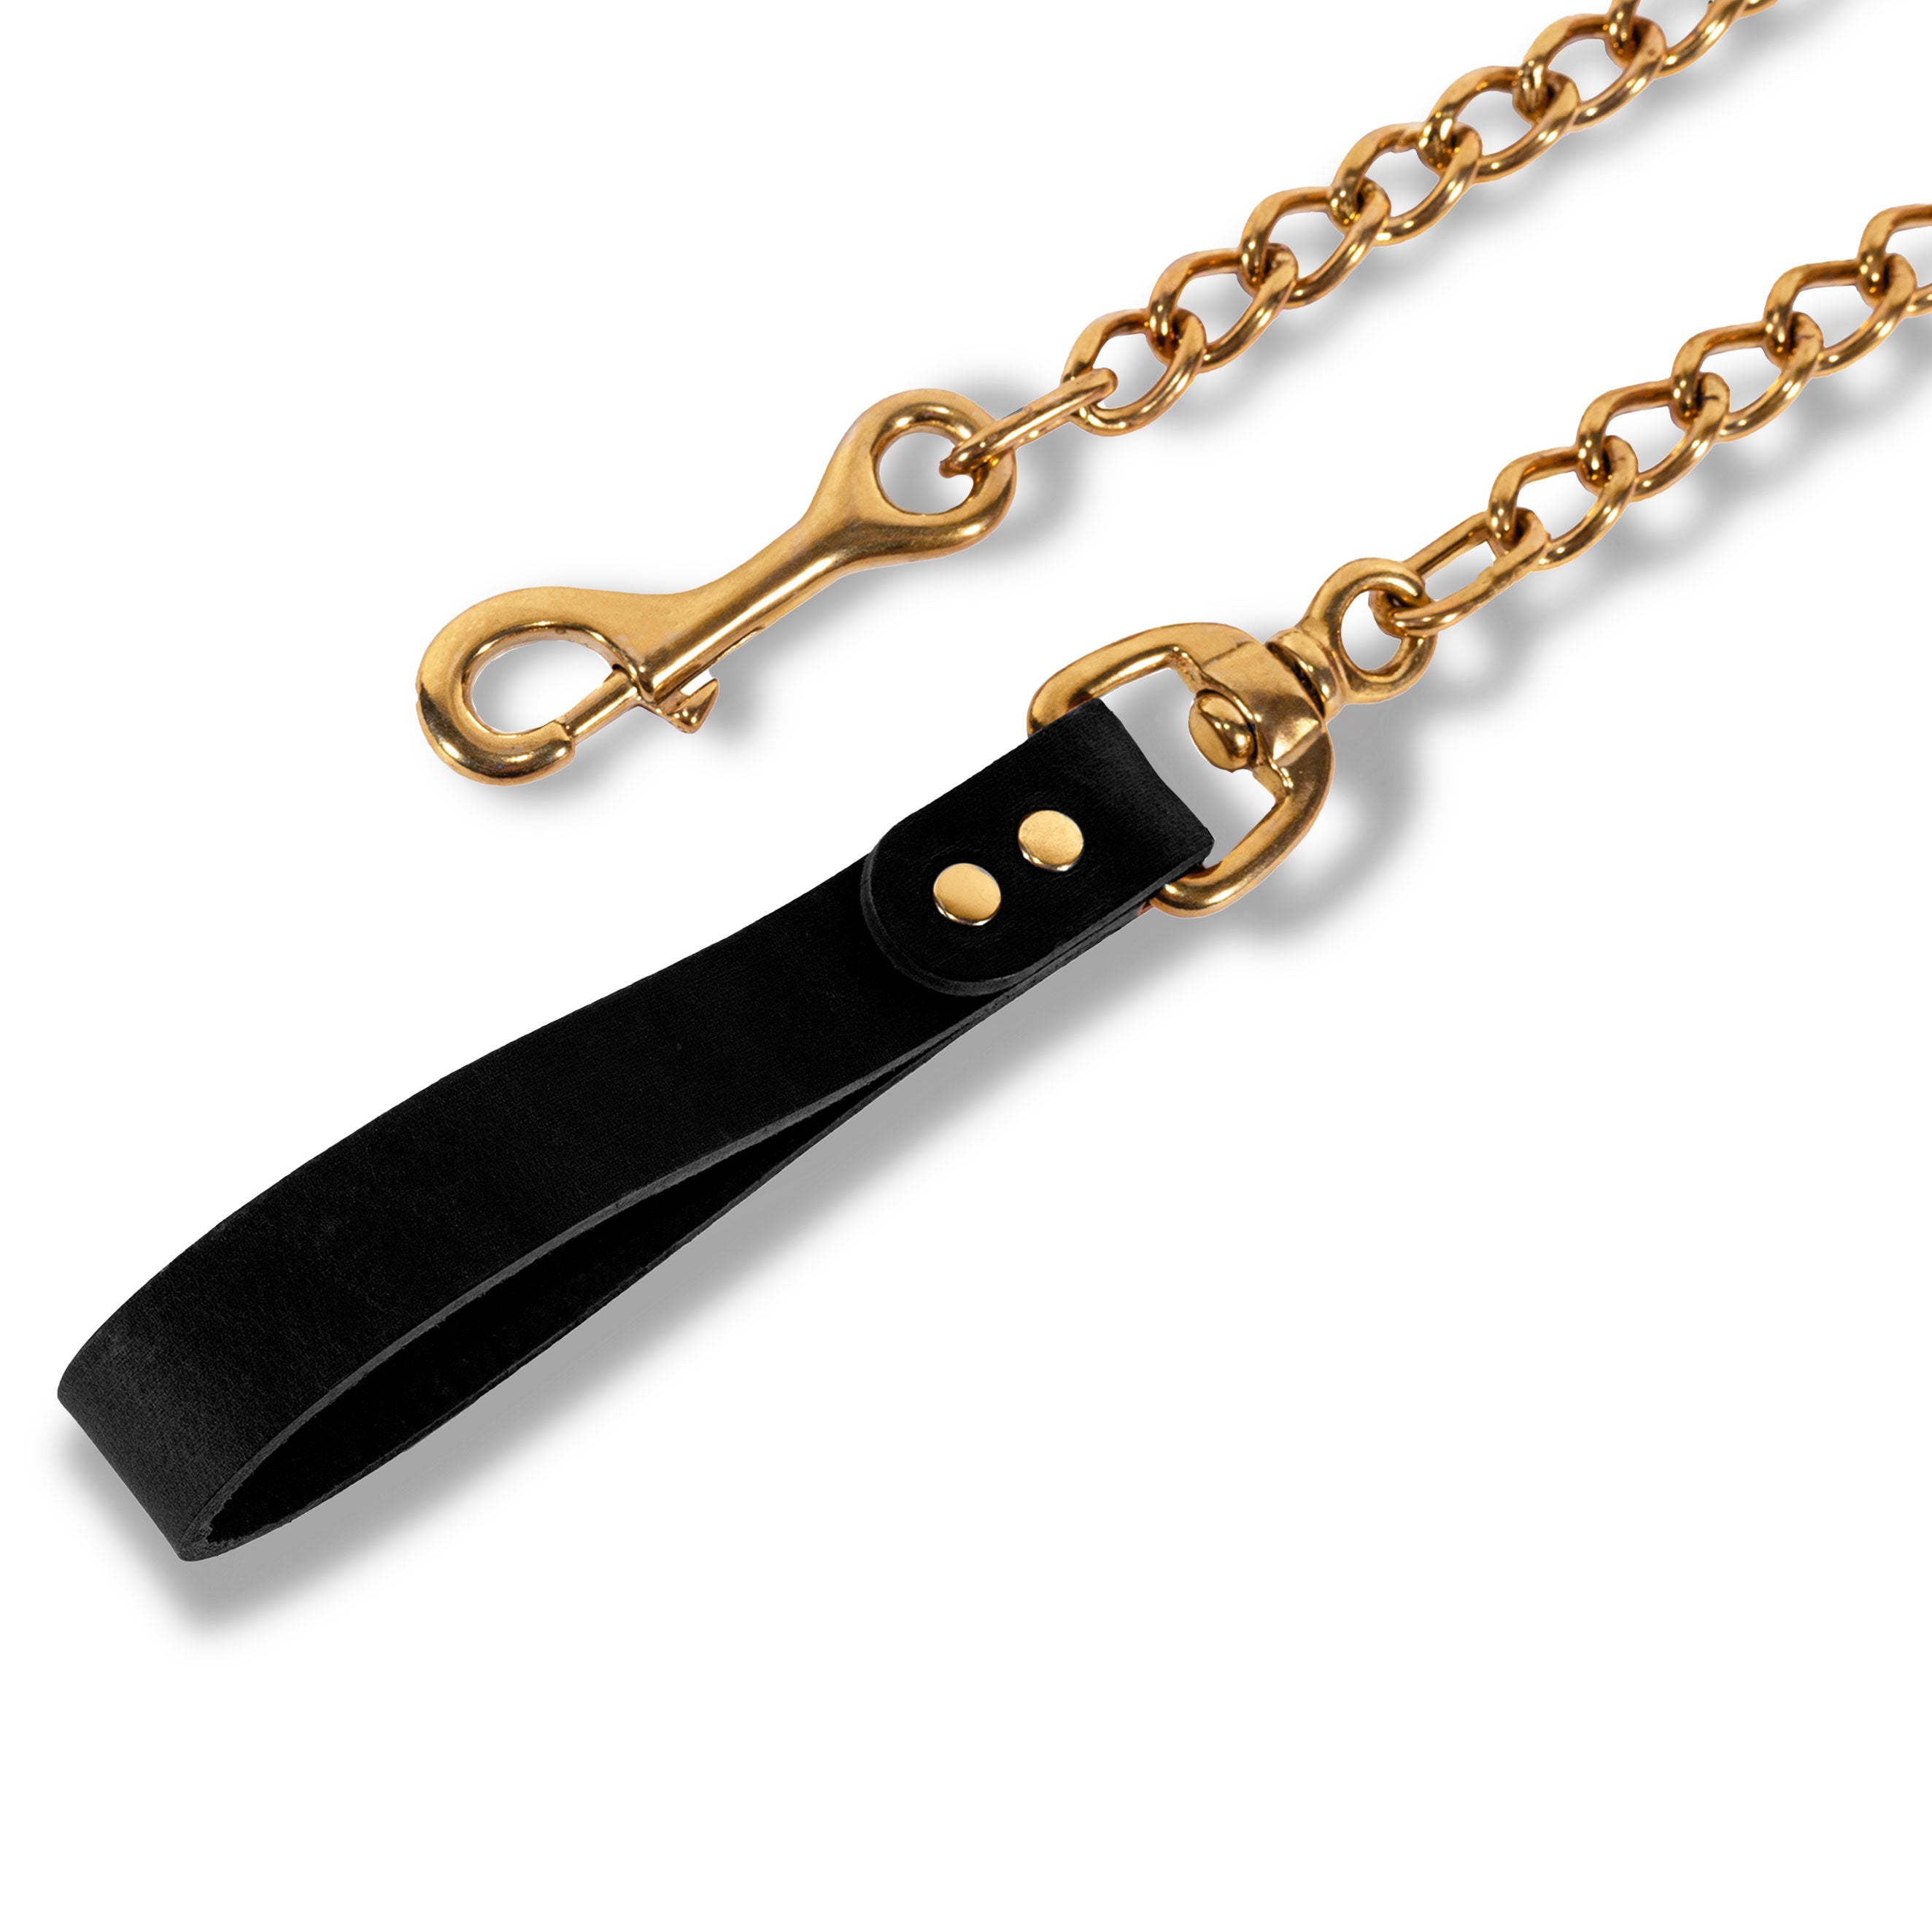 Luxury Nickel-Free Solid Brass BDSM Lead Black Leather Hand Loop